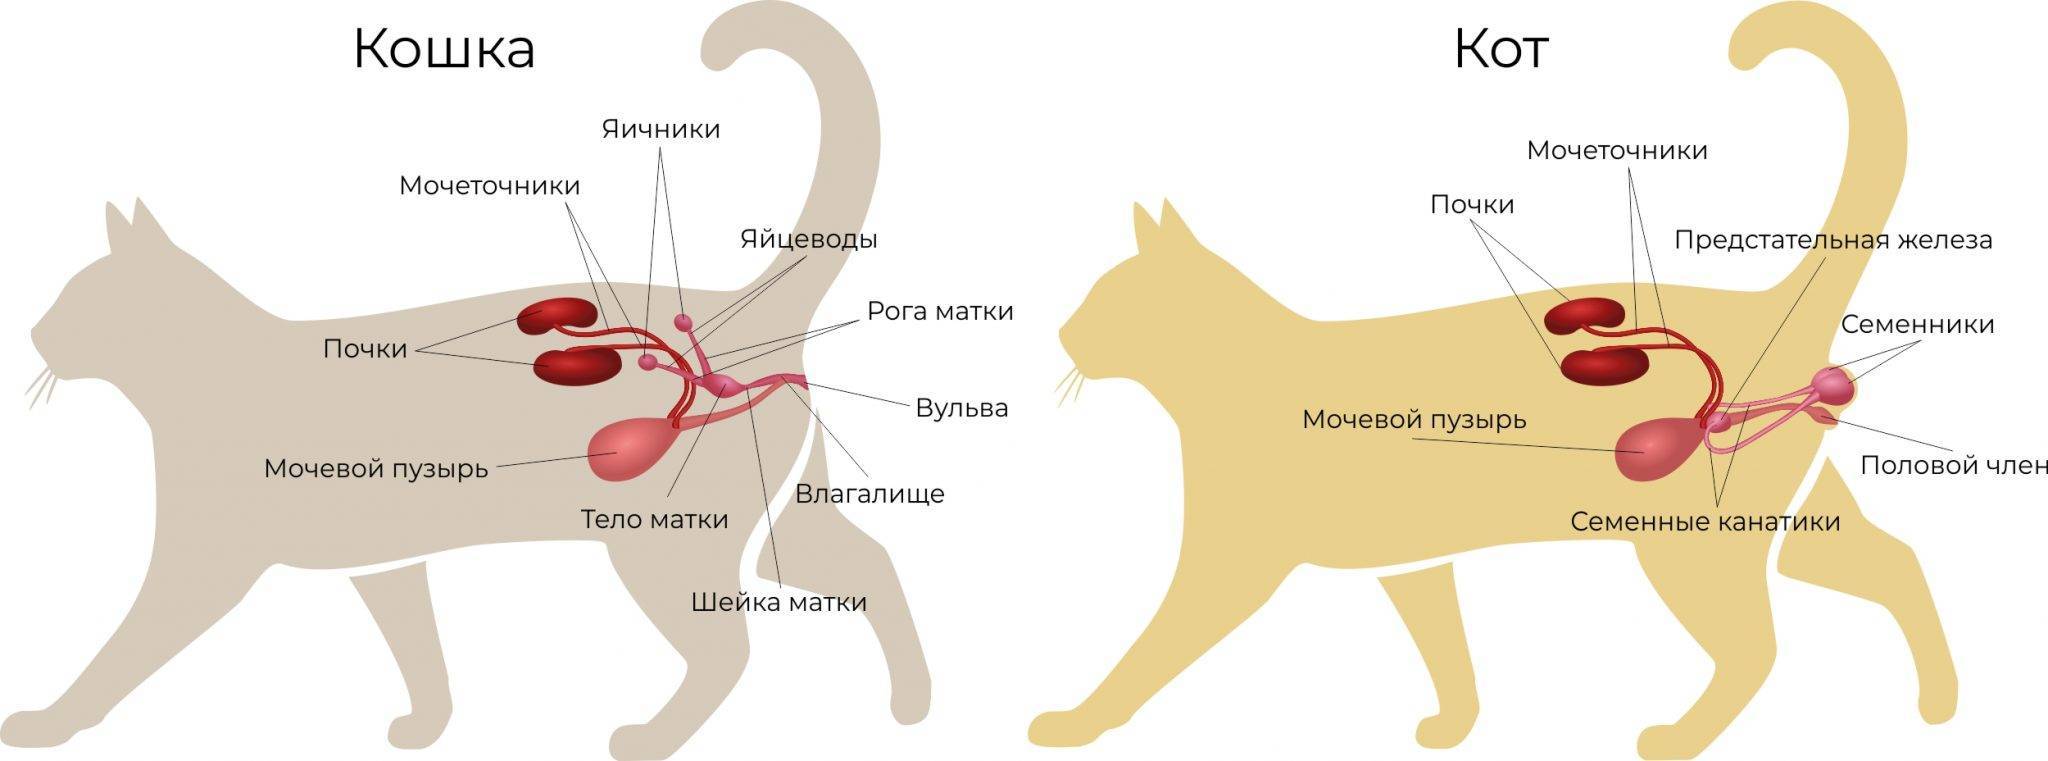 Кошка кашляет, как будто подавилась, хочет вырвать, хрипит, чихает: что делать, причины и лечение - блог о животных - zoo-pet.ru